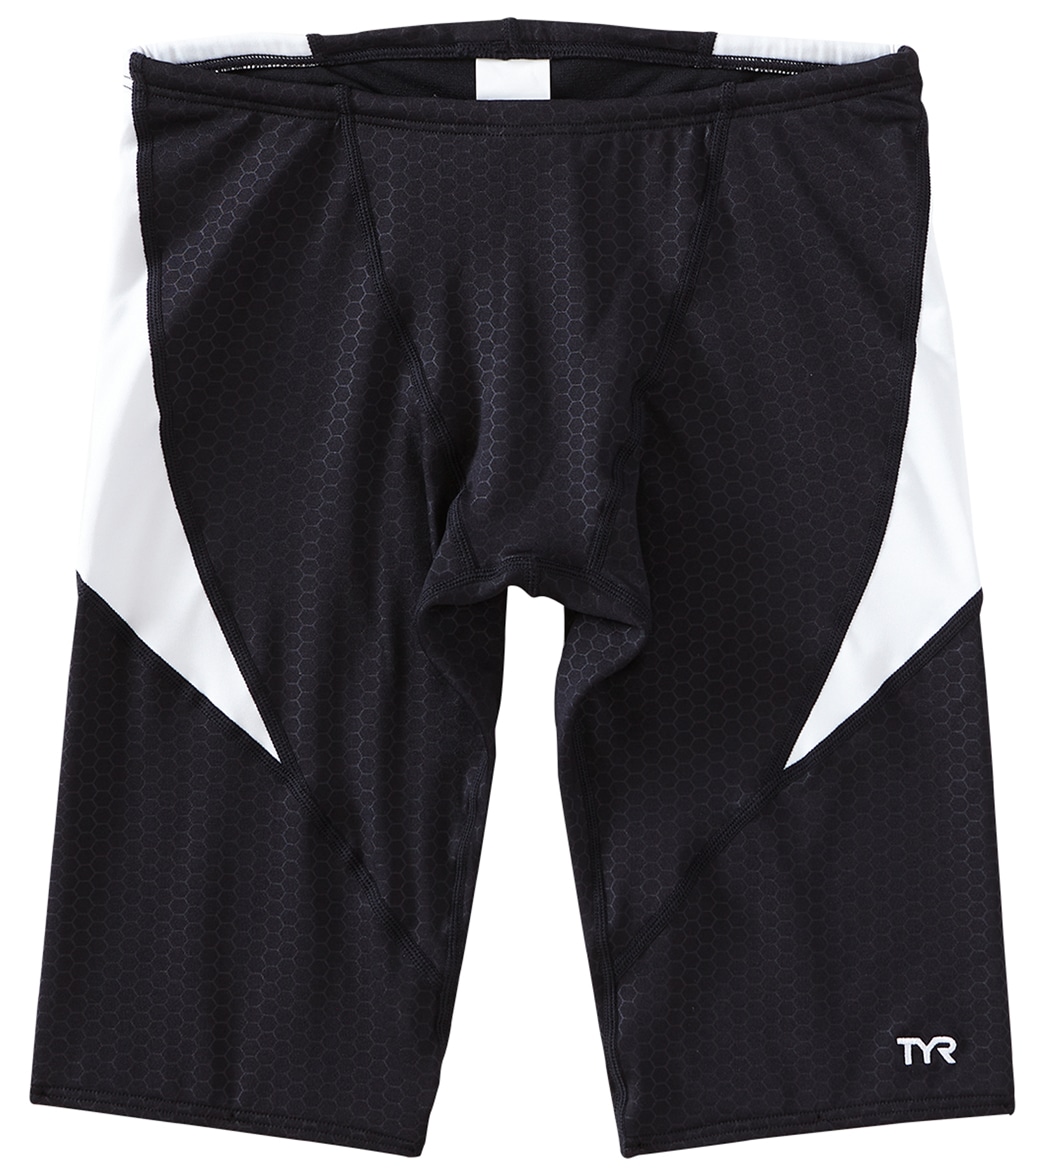 TYR Boys' Hexa Curve Splice Jammer Swimsuit - Black/White 22 - Swimoutlet.com